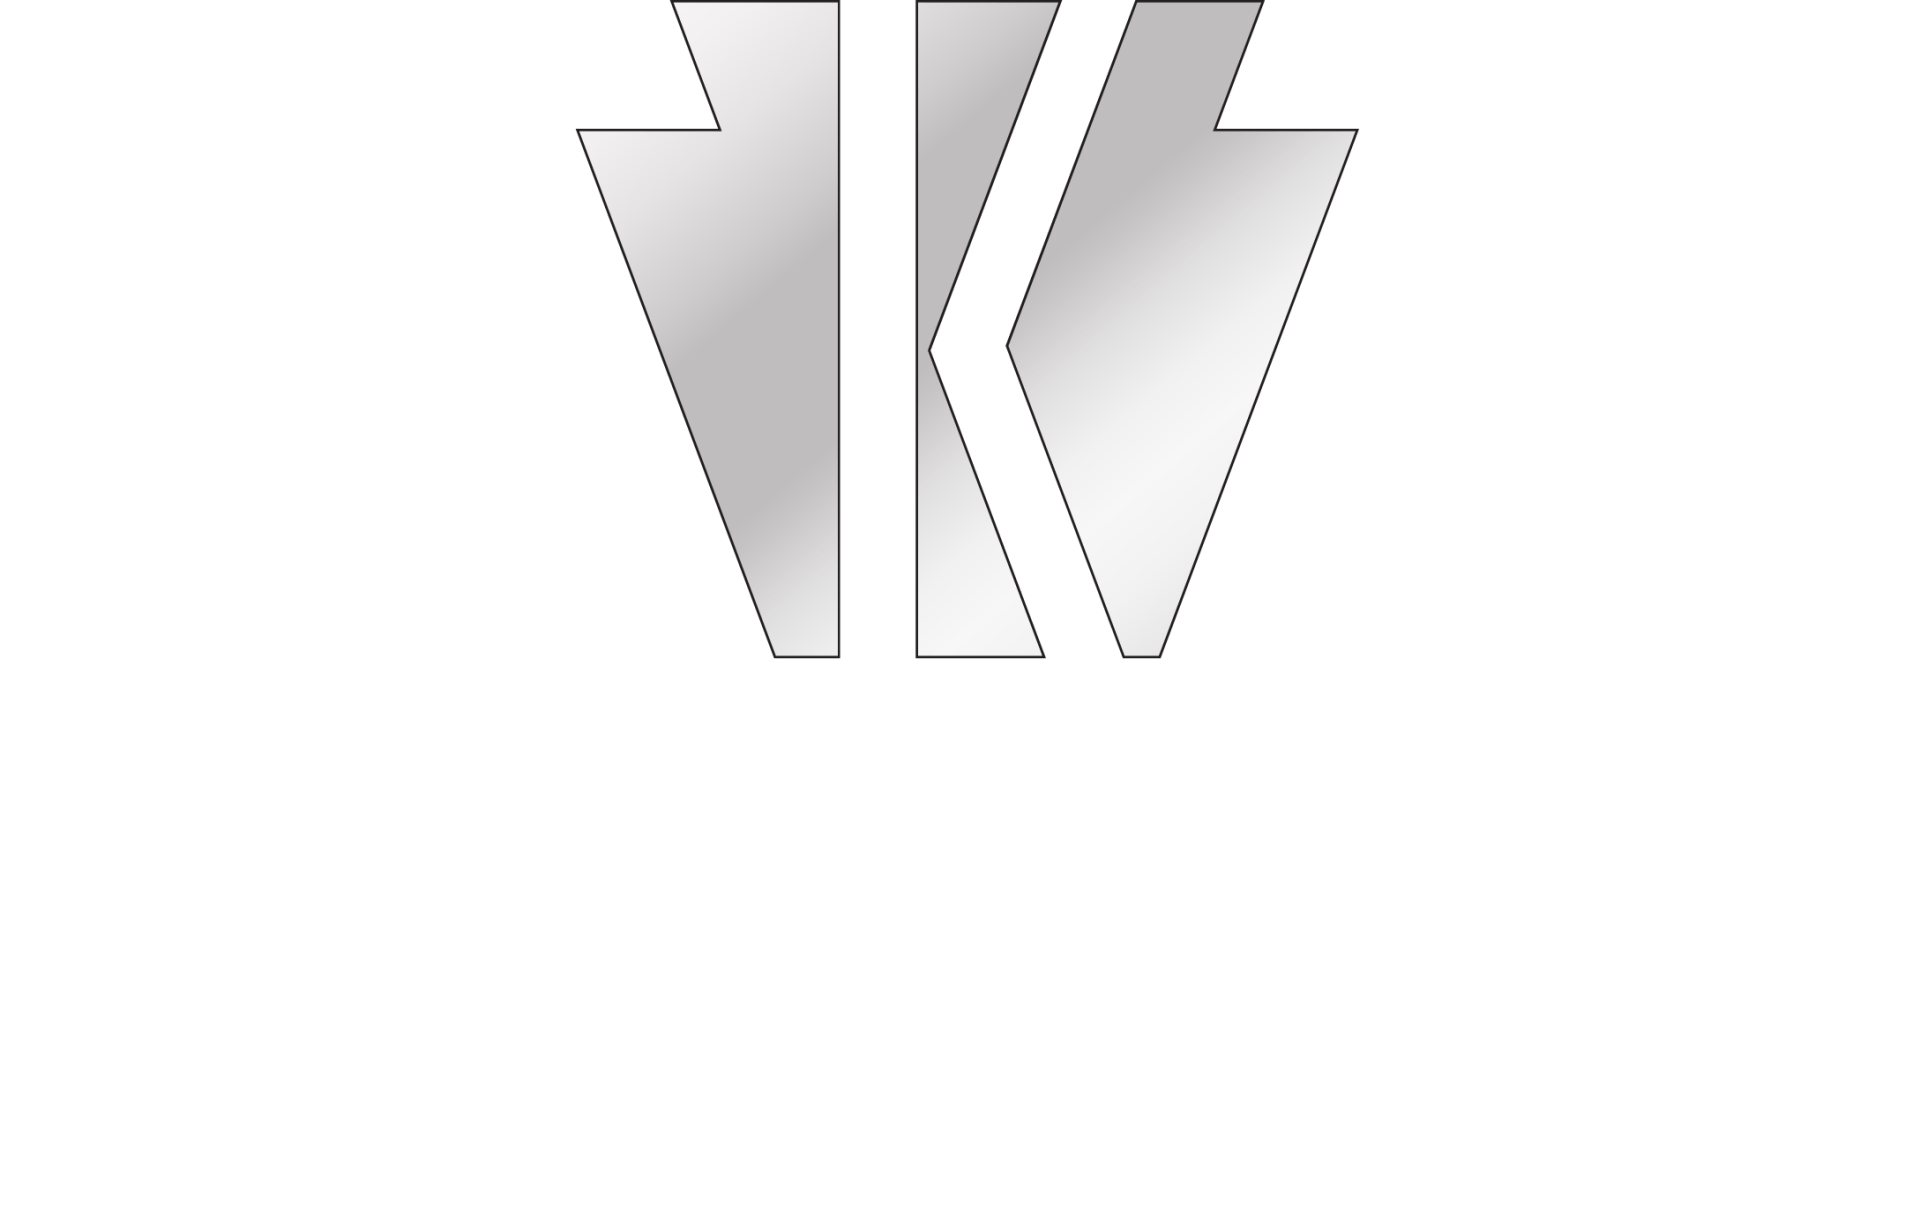 Keystone Financial Resources LLC